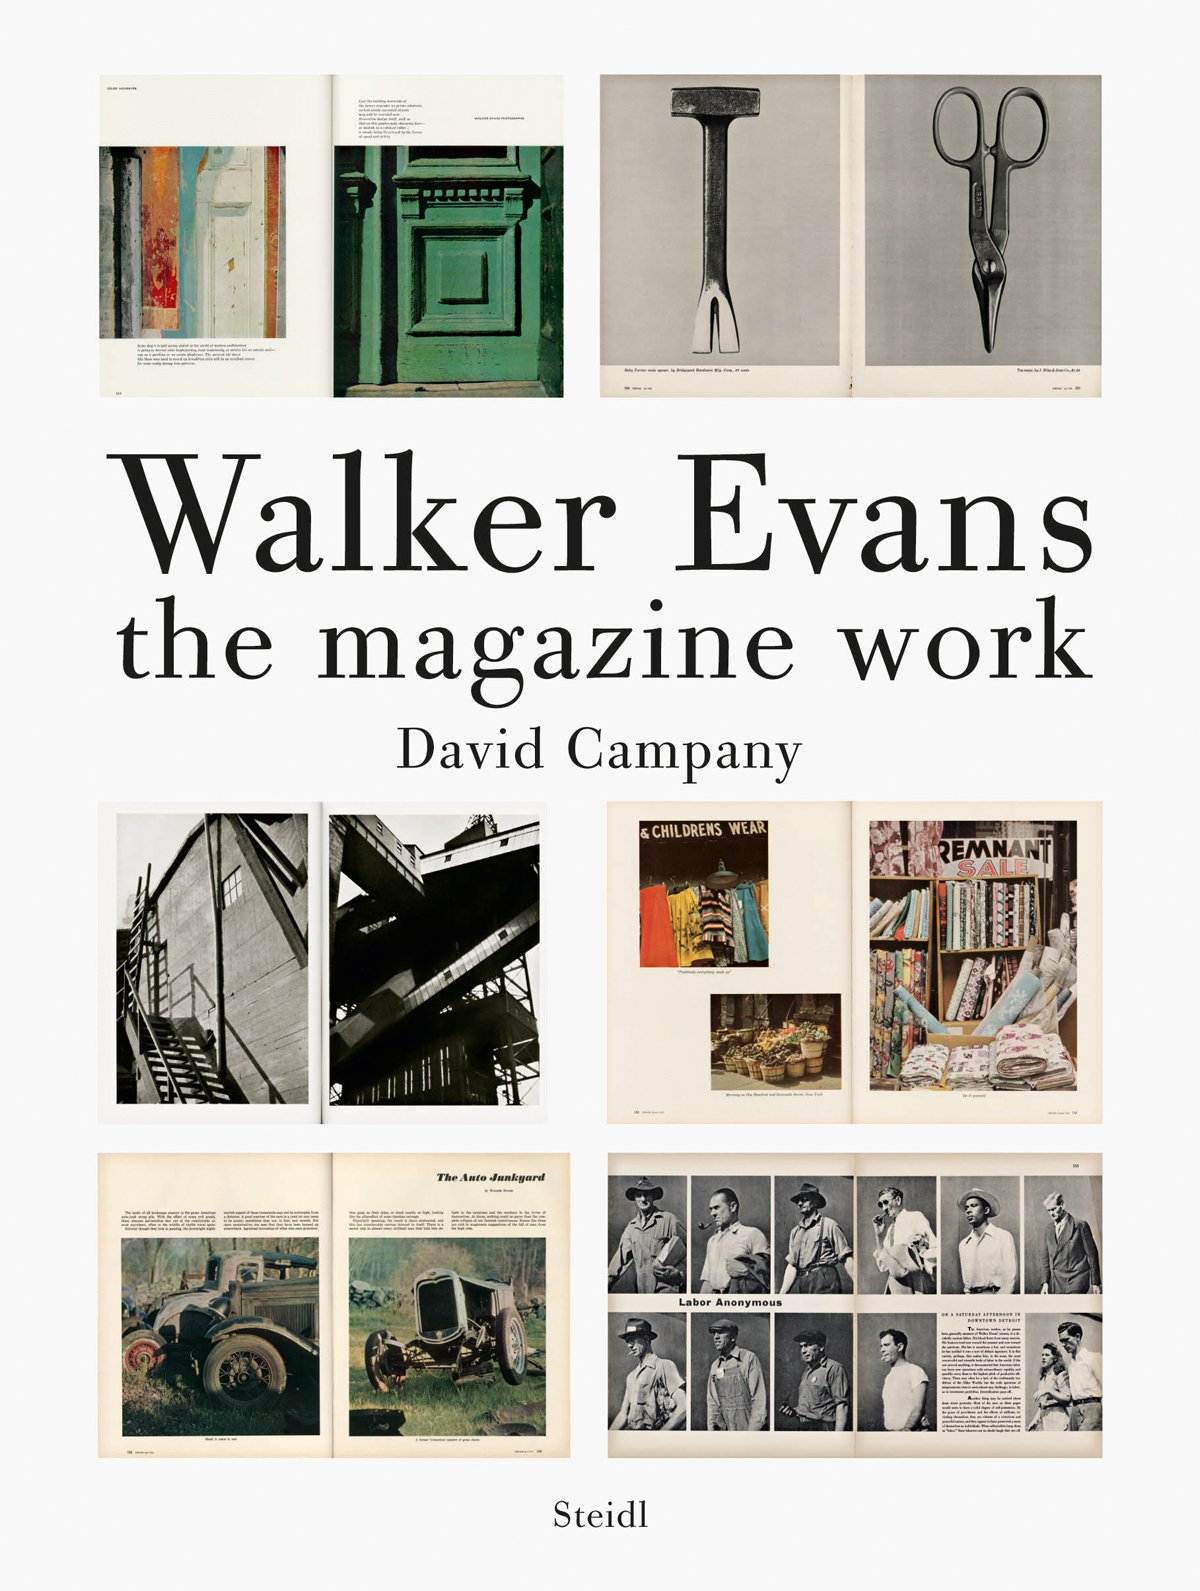 Walker Evans Magazine Work